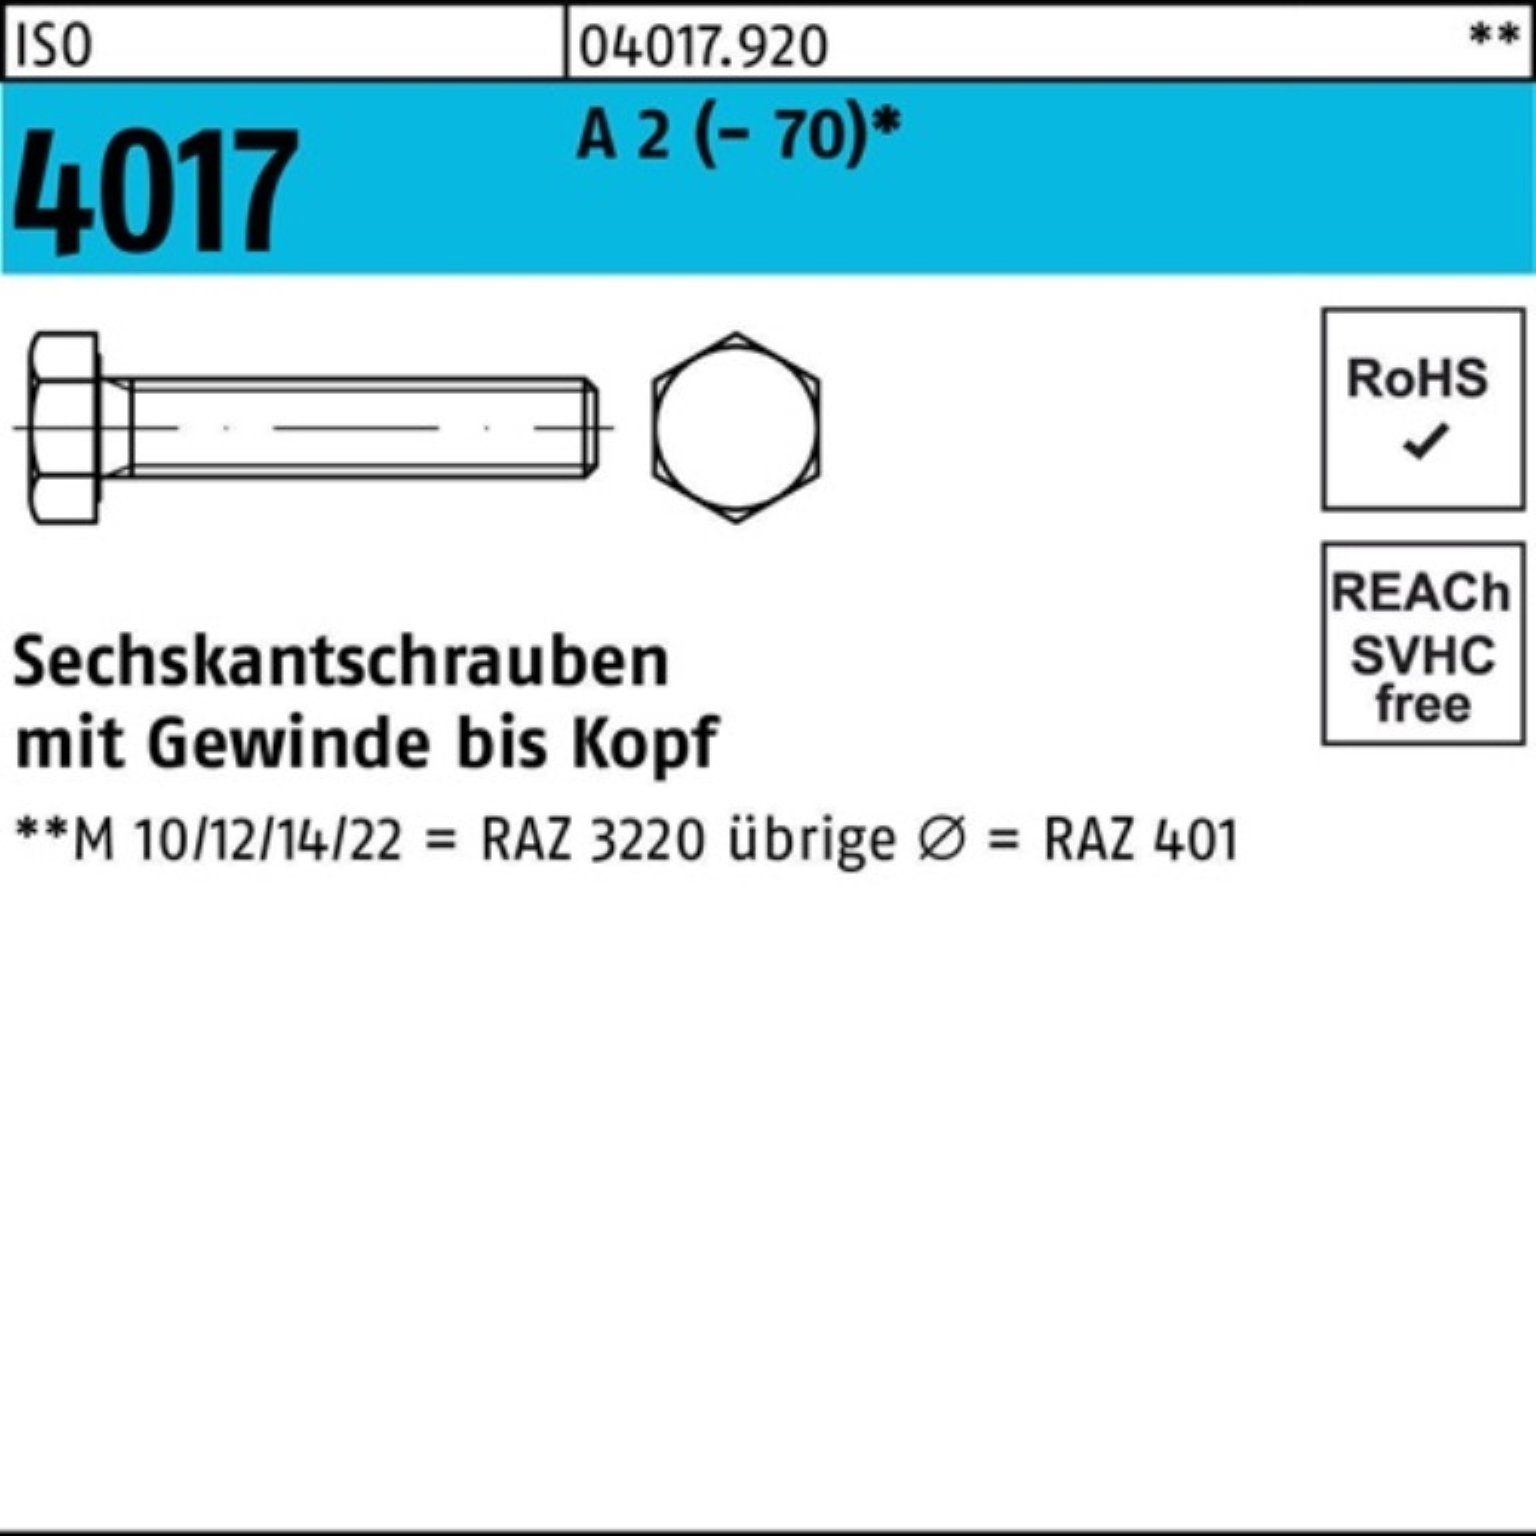 M22x ISO Sechskantschraube VG 25 2 Pack A Bufab (70) Stück Sechskantschraube 40 4017 100er